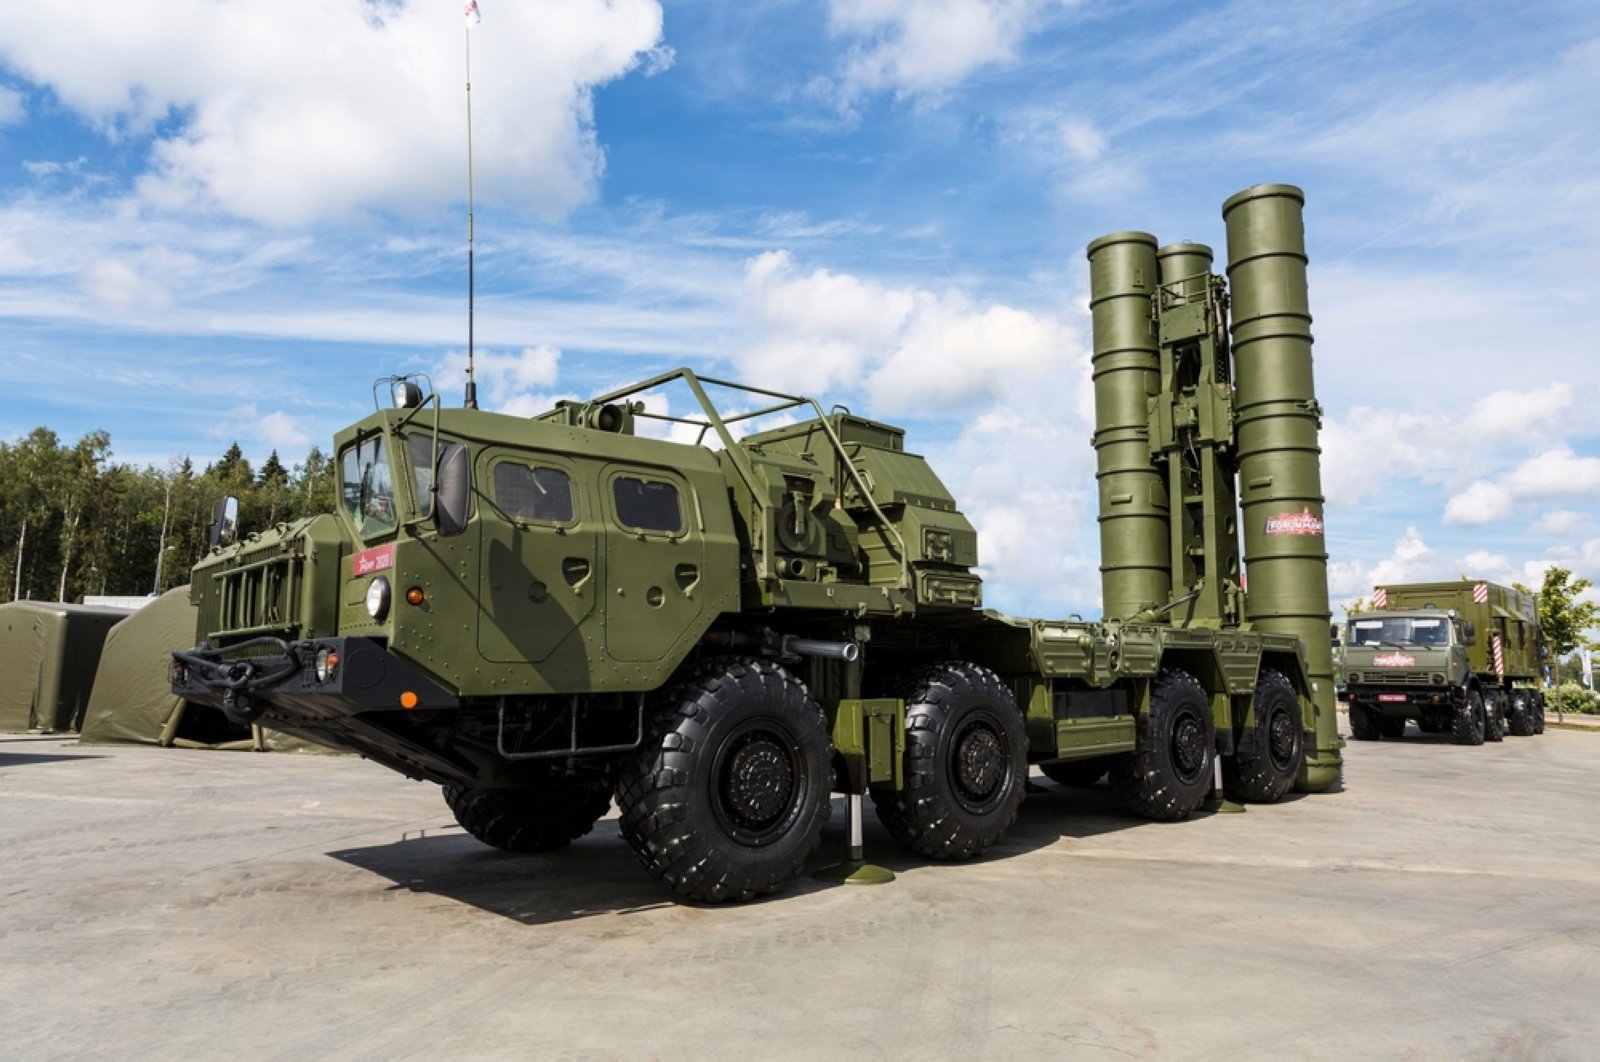 Turki dapat membeli unit S-400 ke-2 dari Rusia: Demir . SSB